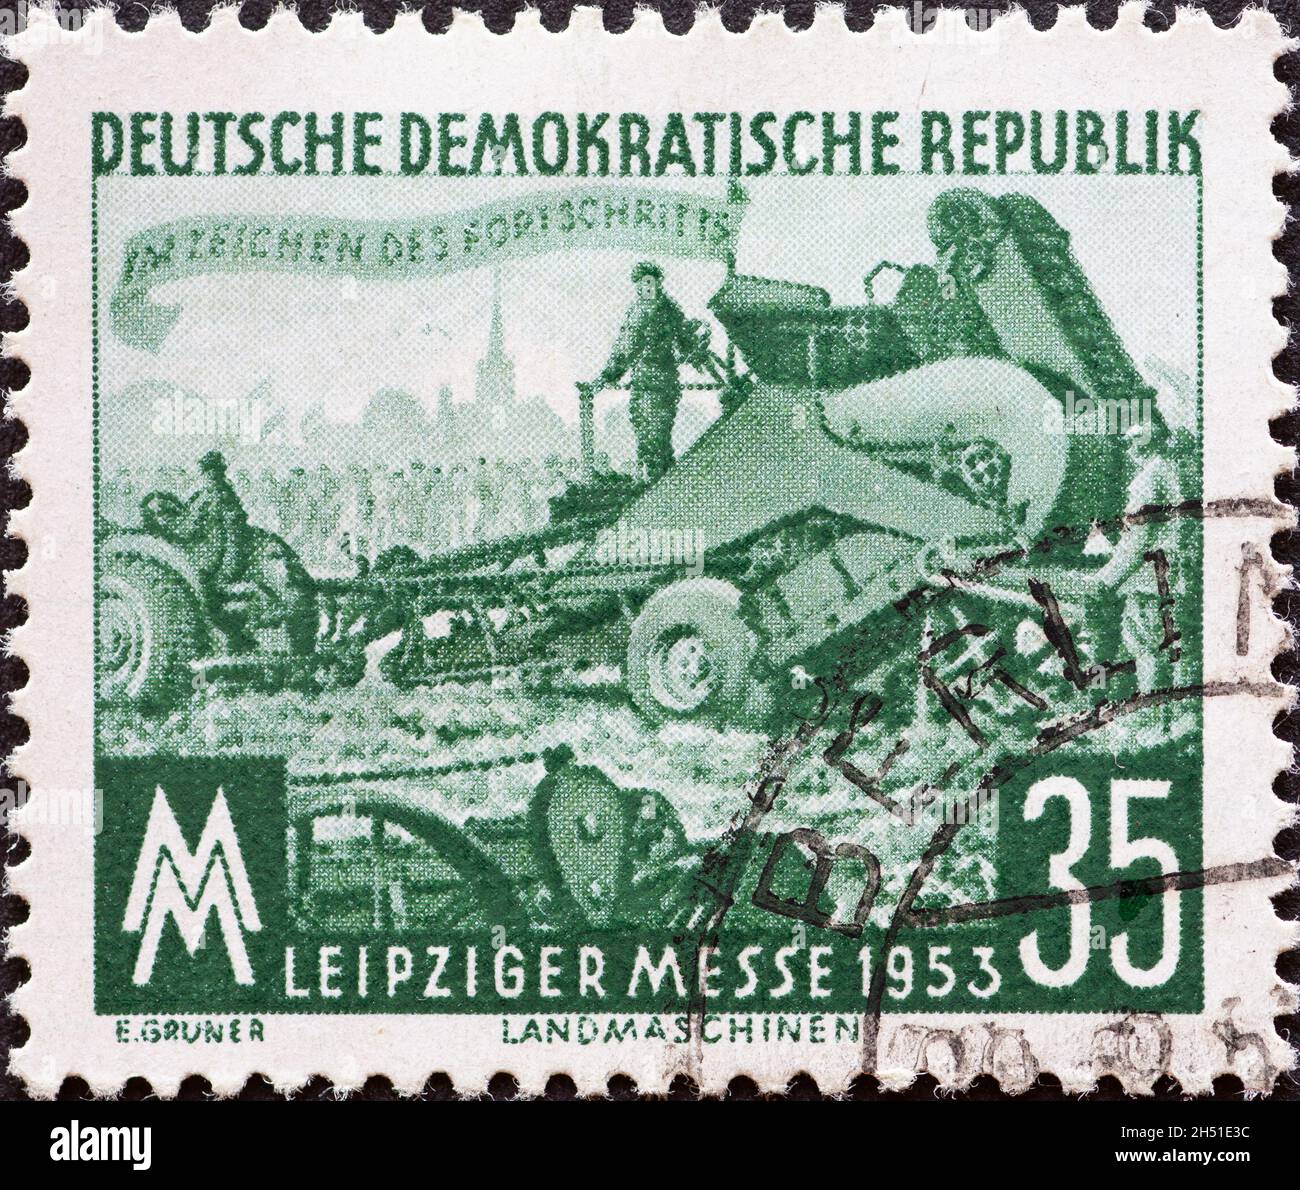 ALLEMAGNE, DDR - VERS 1953 : timbre-poste de l'Allemagne, RDA montrant le champ de foire, machine de levage de la pomme de terre.Foire d'automne de Leipzig Banque D'Images